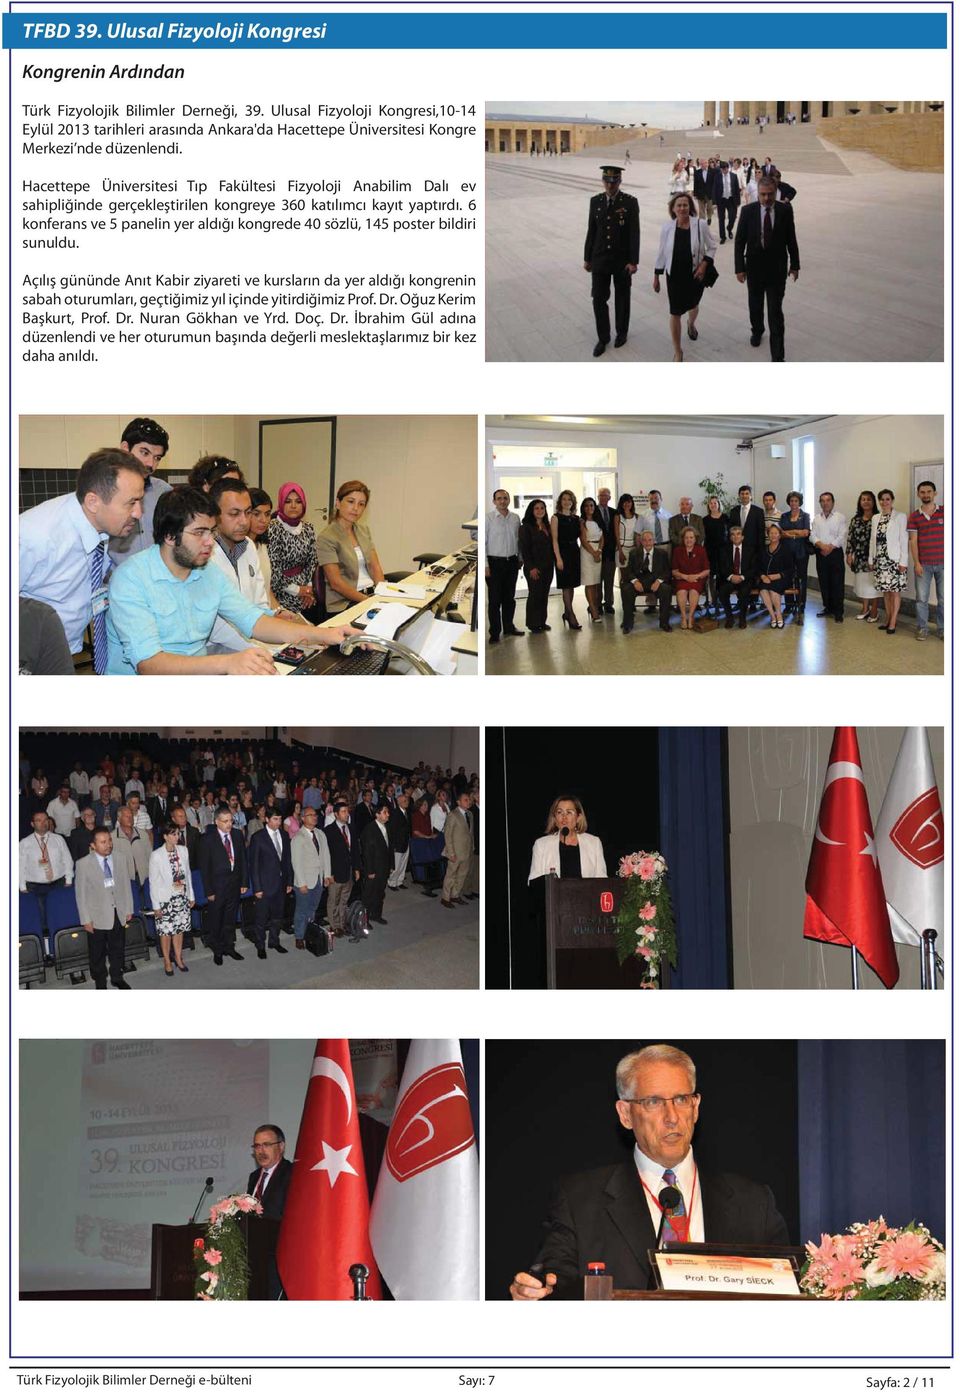 Hacettepe Üniversitesi Tıp Fakültesi Fizyoloji Anabilim Dalı ev sahipliğinde gerçekleştirilen kongreye 360 katılımcı kayıt yaptırdı.